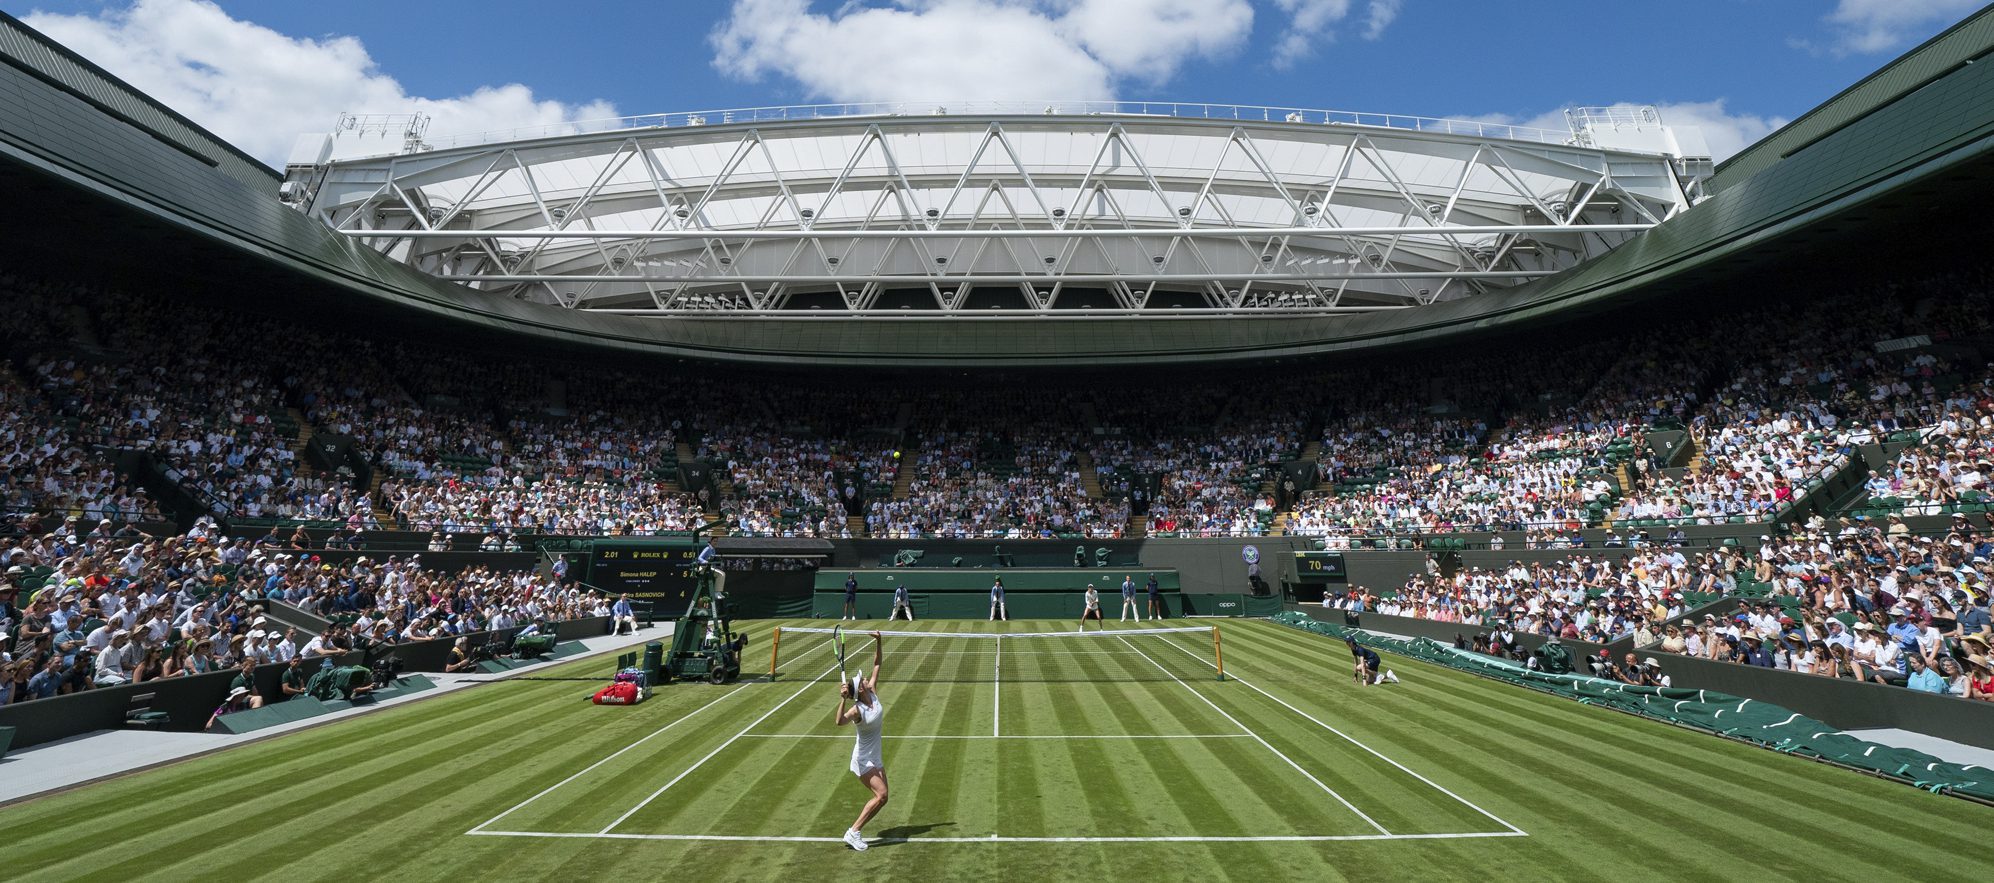 No1_Court_Wimbledon_12